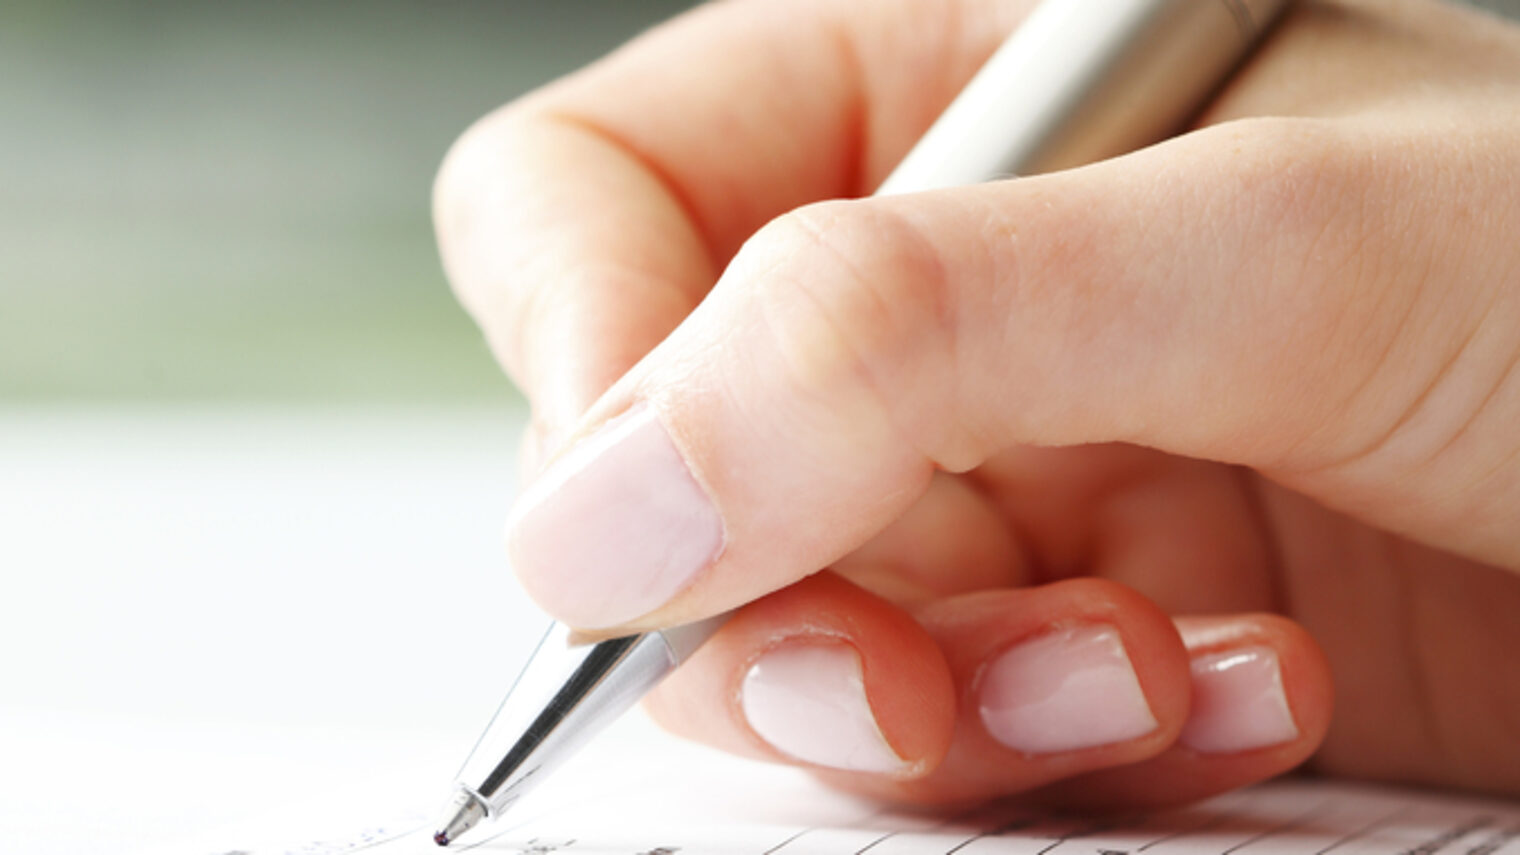 Eine Frauenhand schreibt mit einem Kugelschreiber.